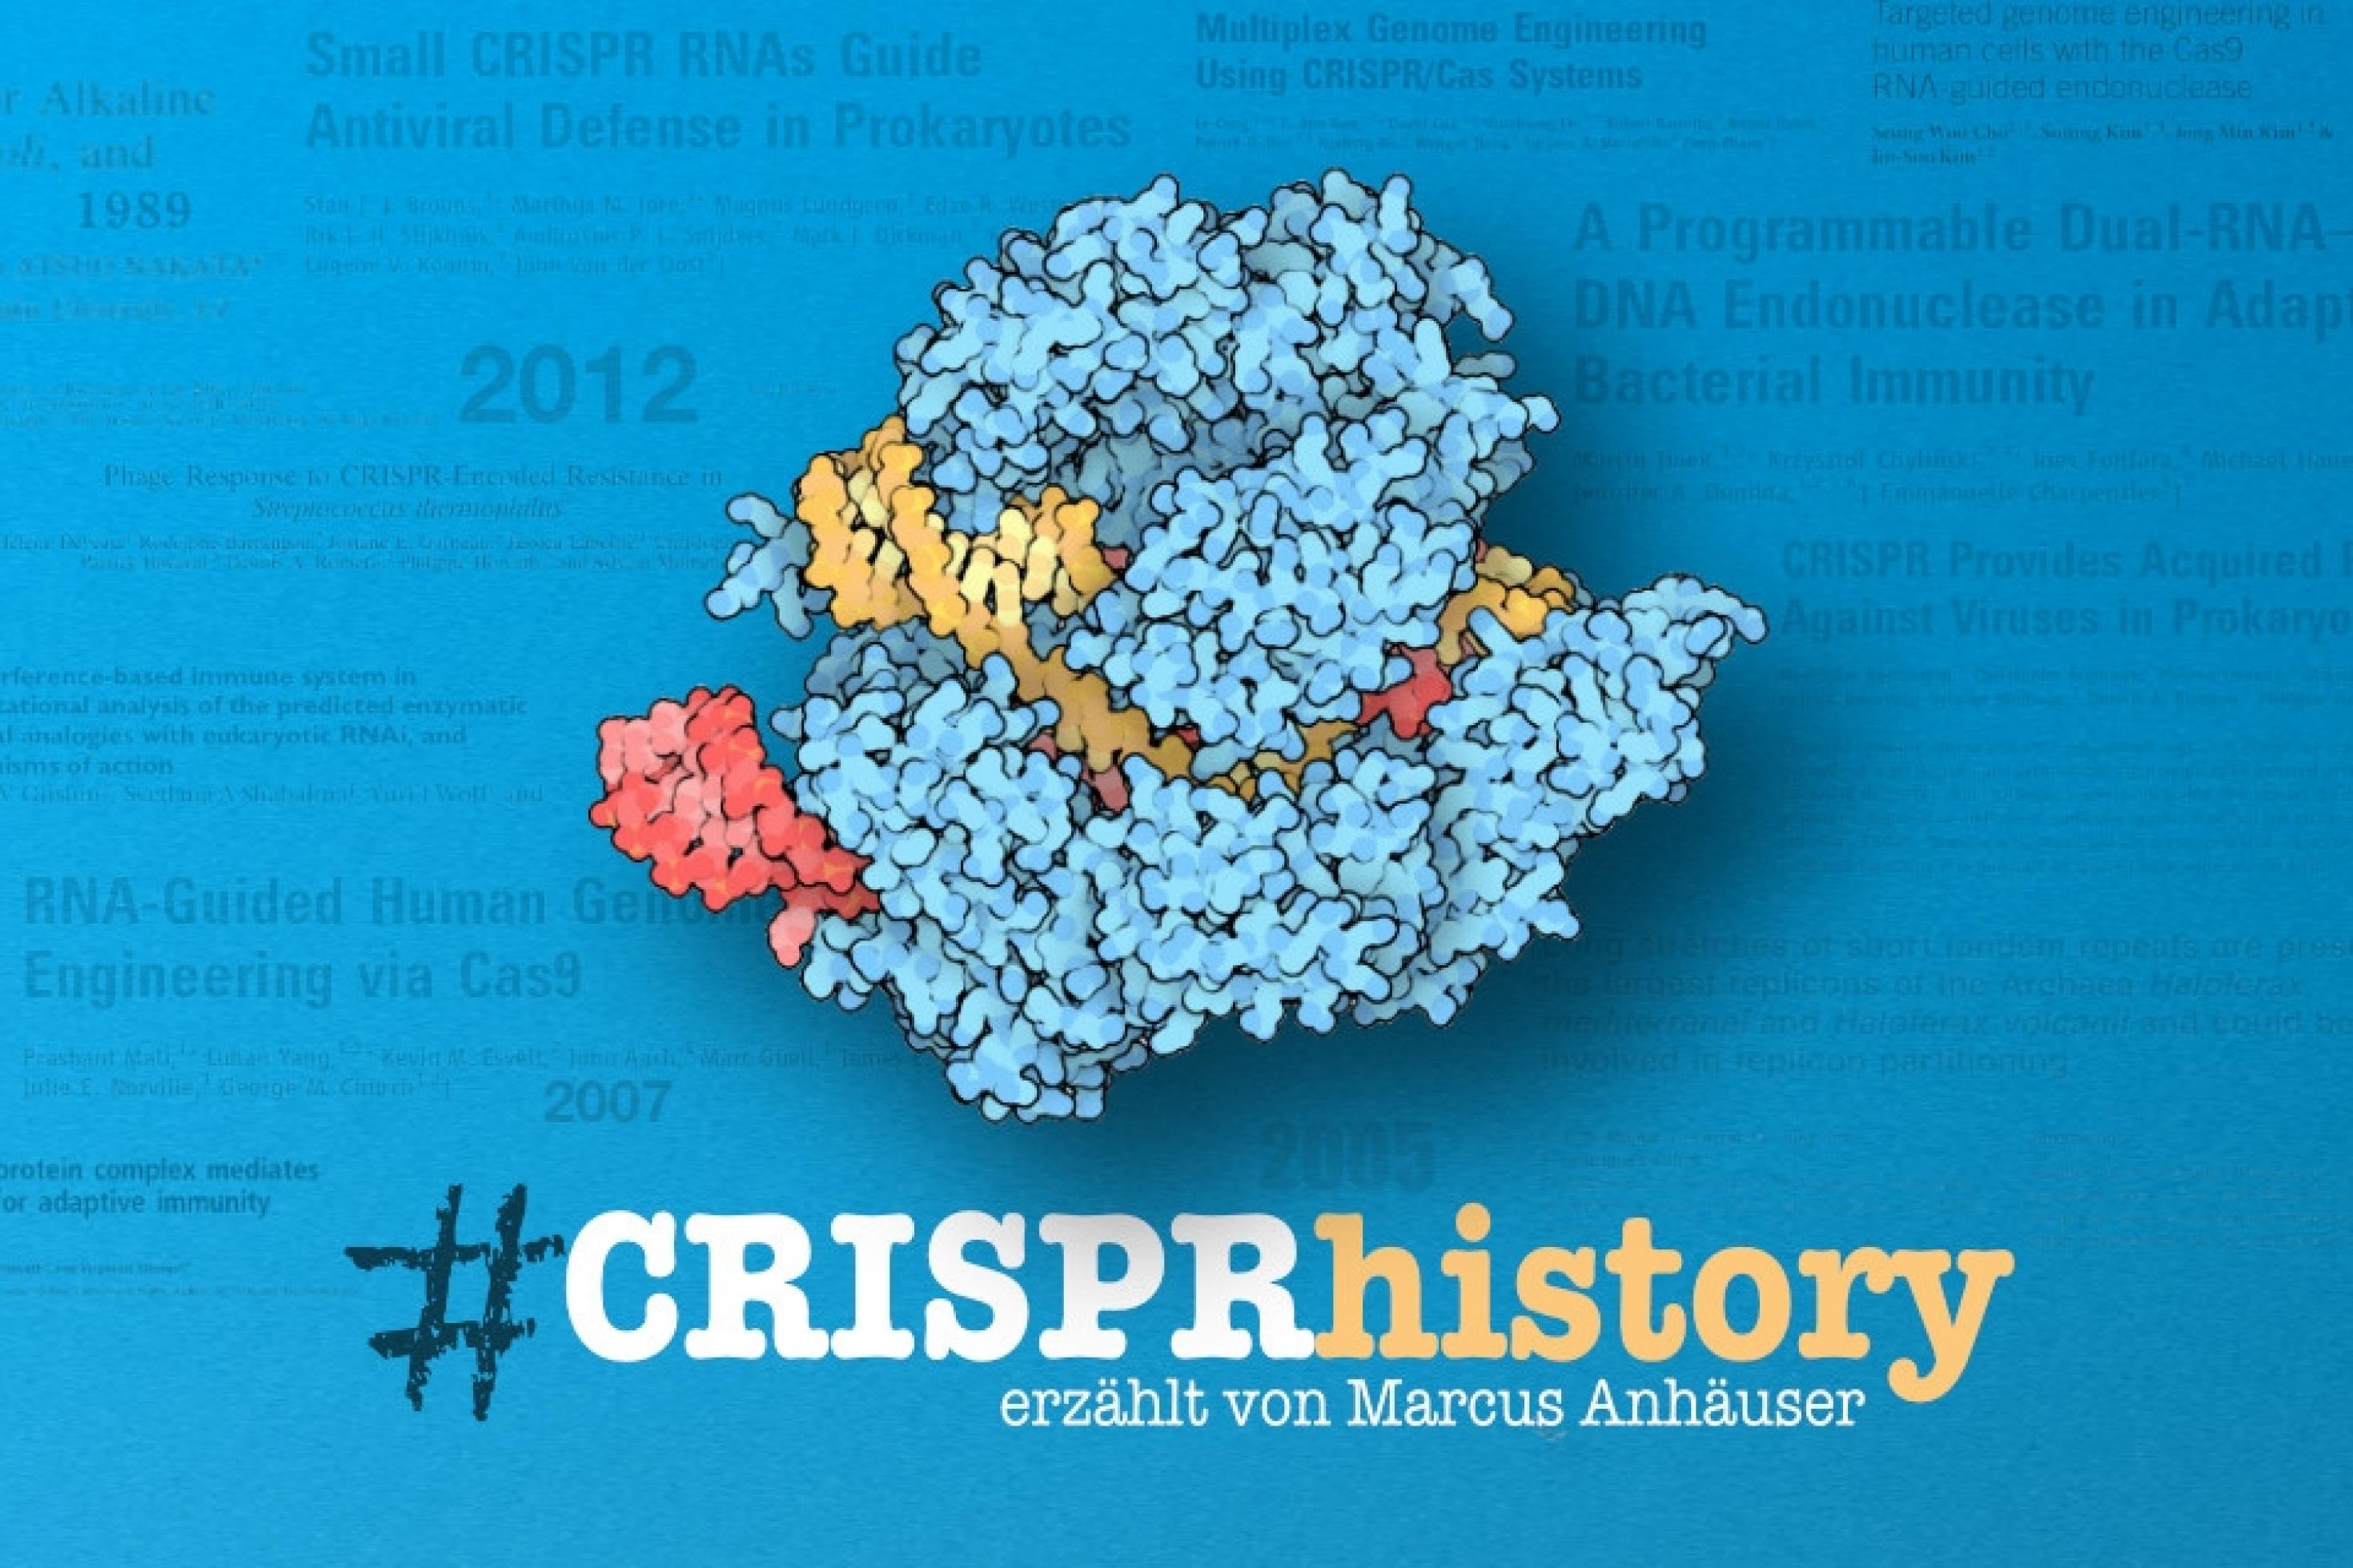 Das Logo der Koralle #CRISPRhistory, das Cas9 Molekül vor blauem Hintergrund mit schwach sichtbaren Titel wichtiger Fachartikel und wichtigen Jahreszahlen. Unter dem Molekül der Schriftzug von #CRISPRhistory und „erzählt von Marcus Anhäuser“